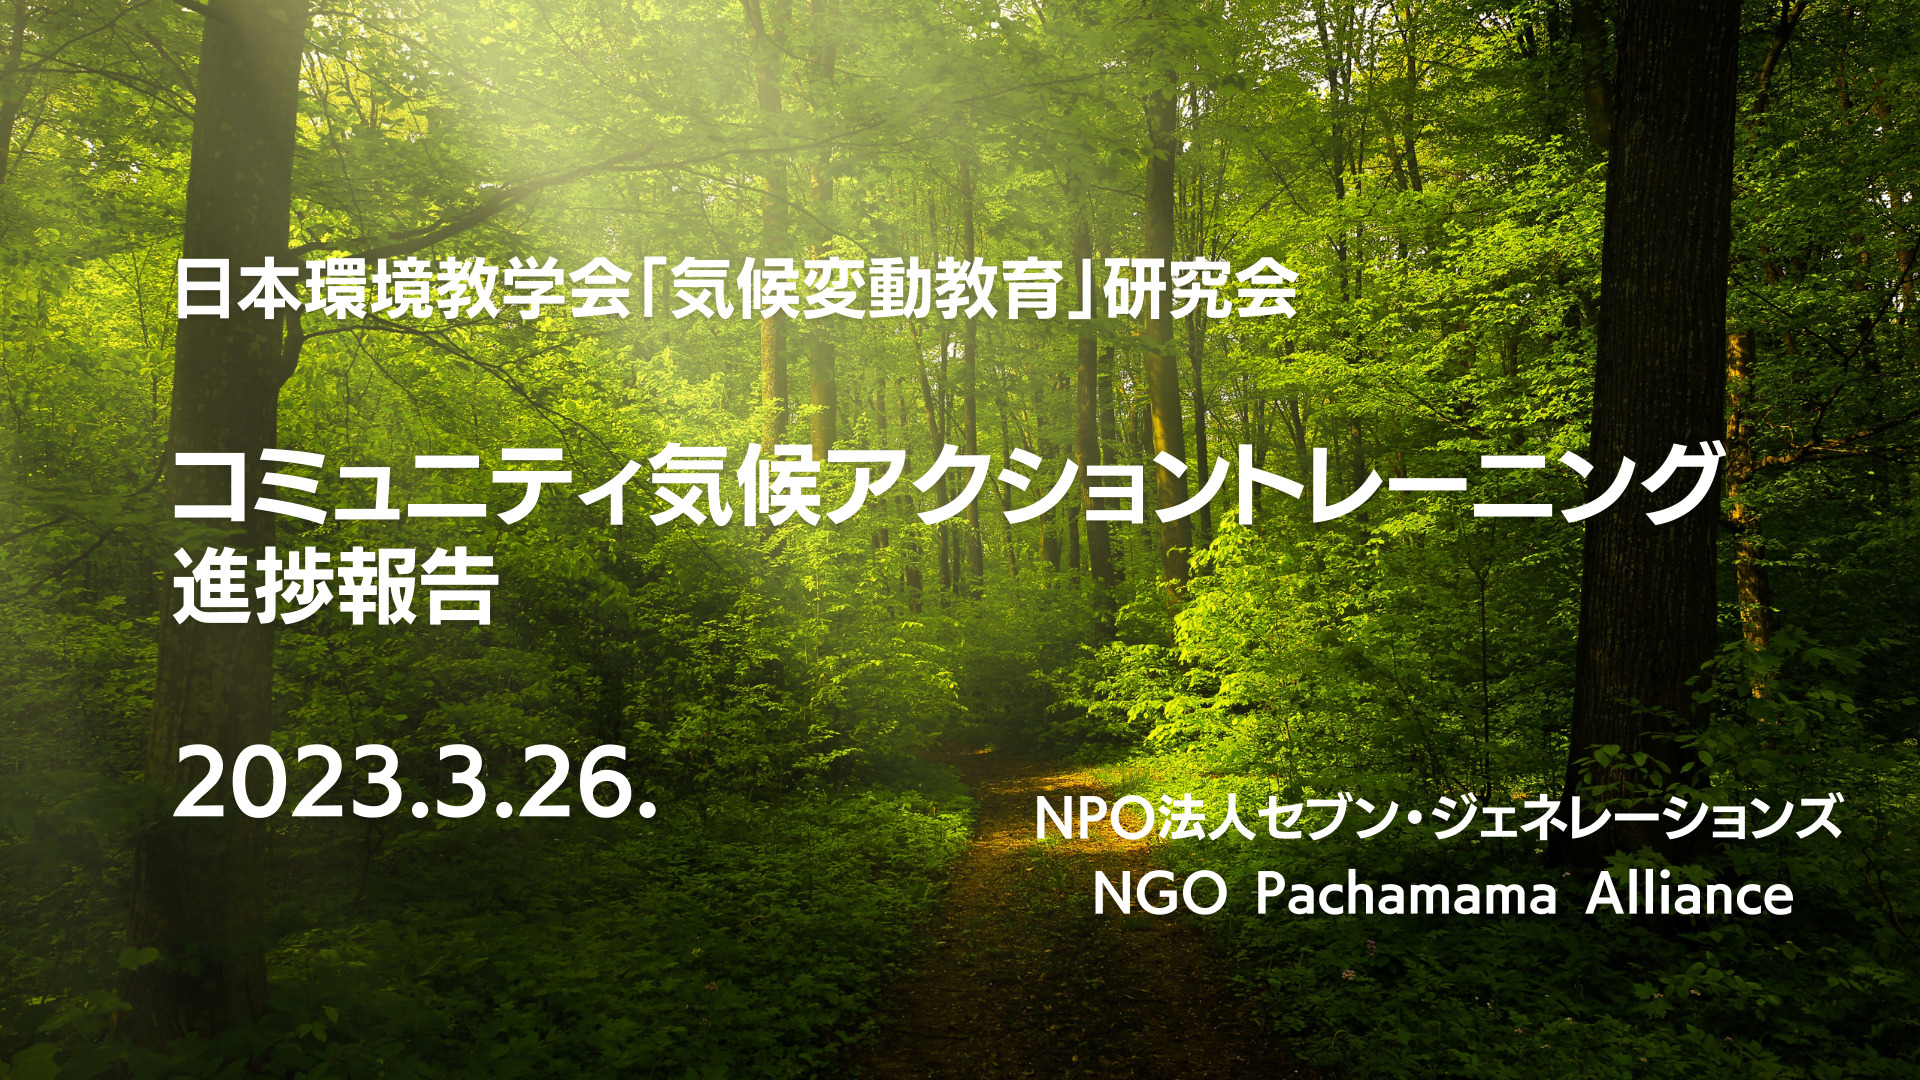 日本環境教育学会「気候変動教育」研究会で中間進捗発表しました